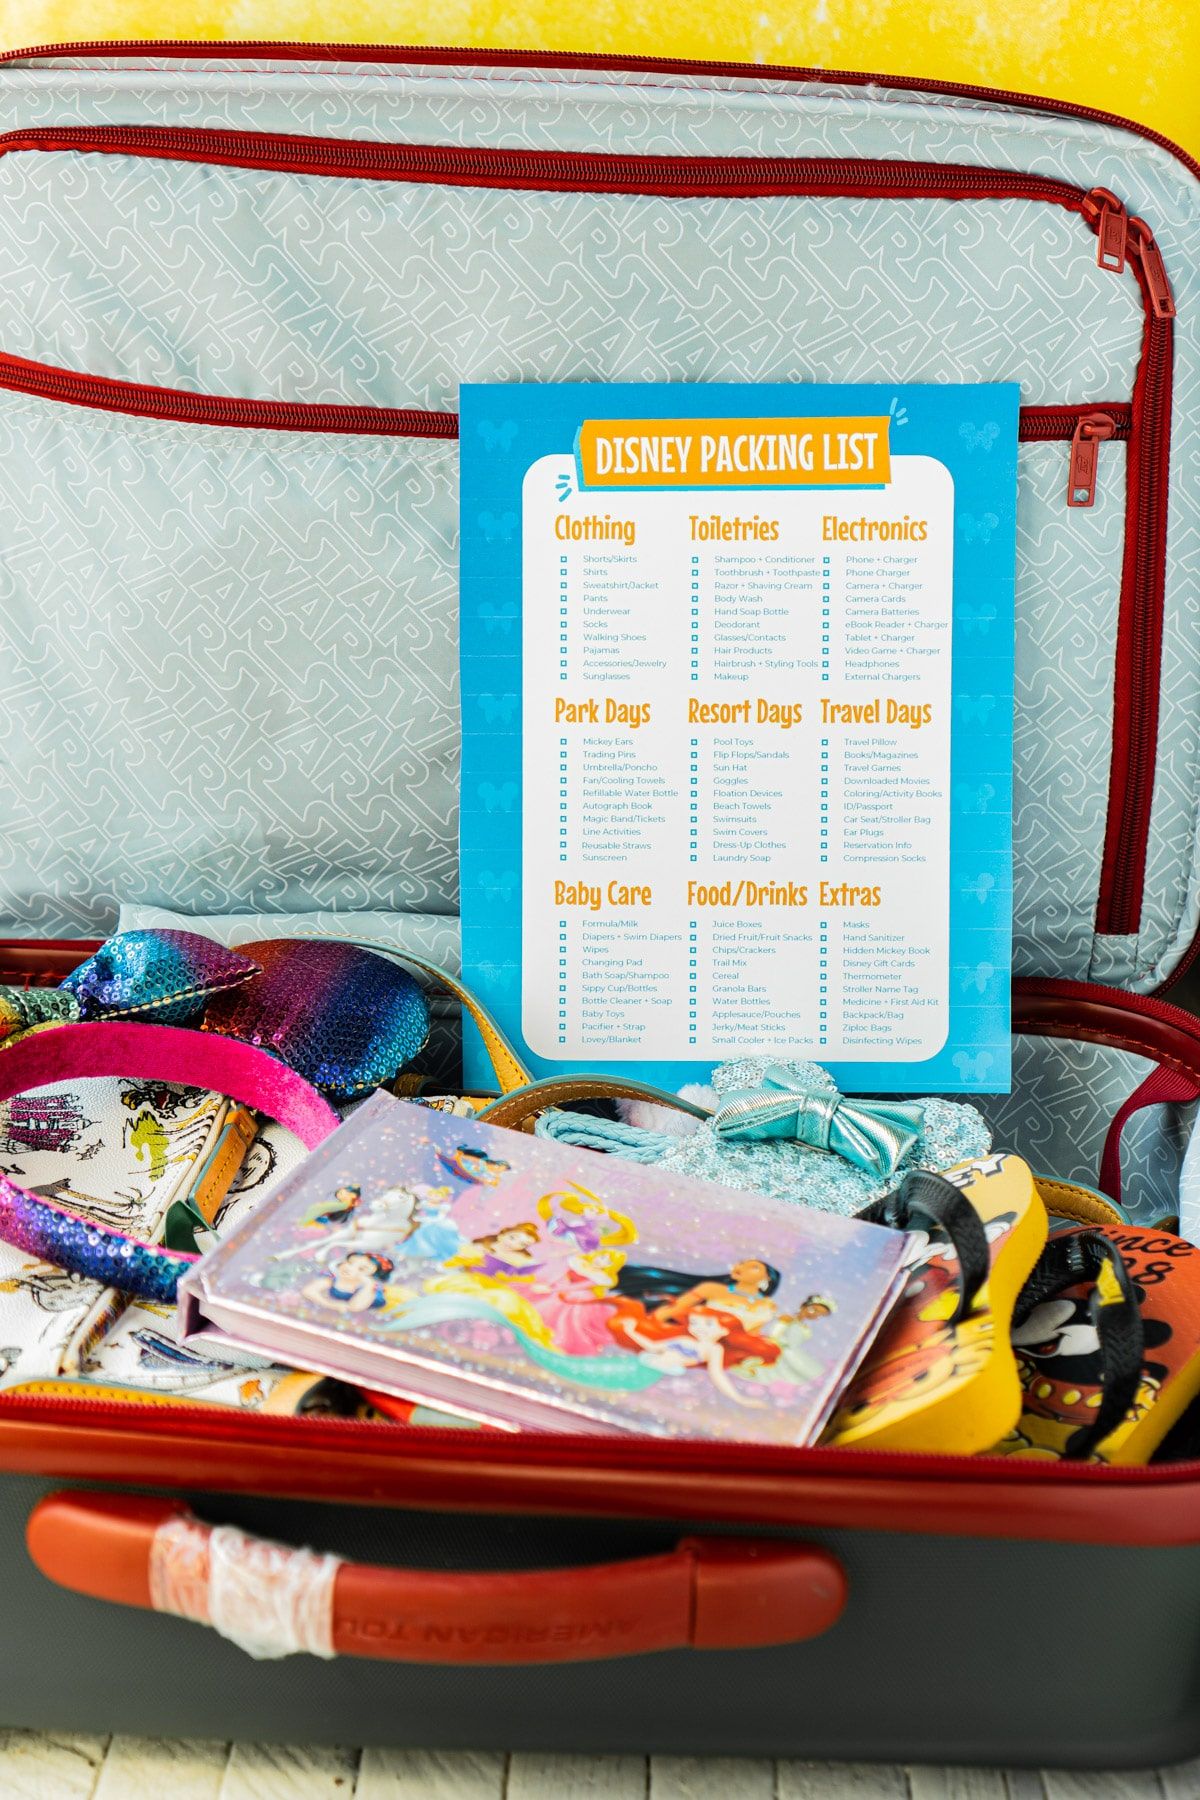 Disney öğeleriyle dolu bir valizin üstünde Disney paketleme listesi